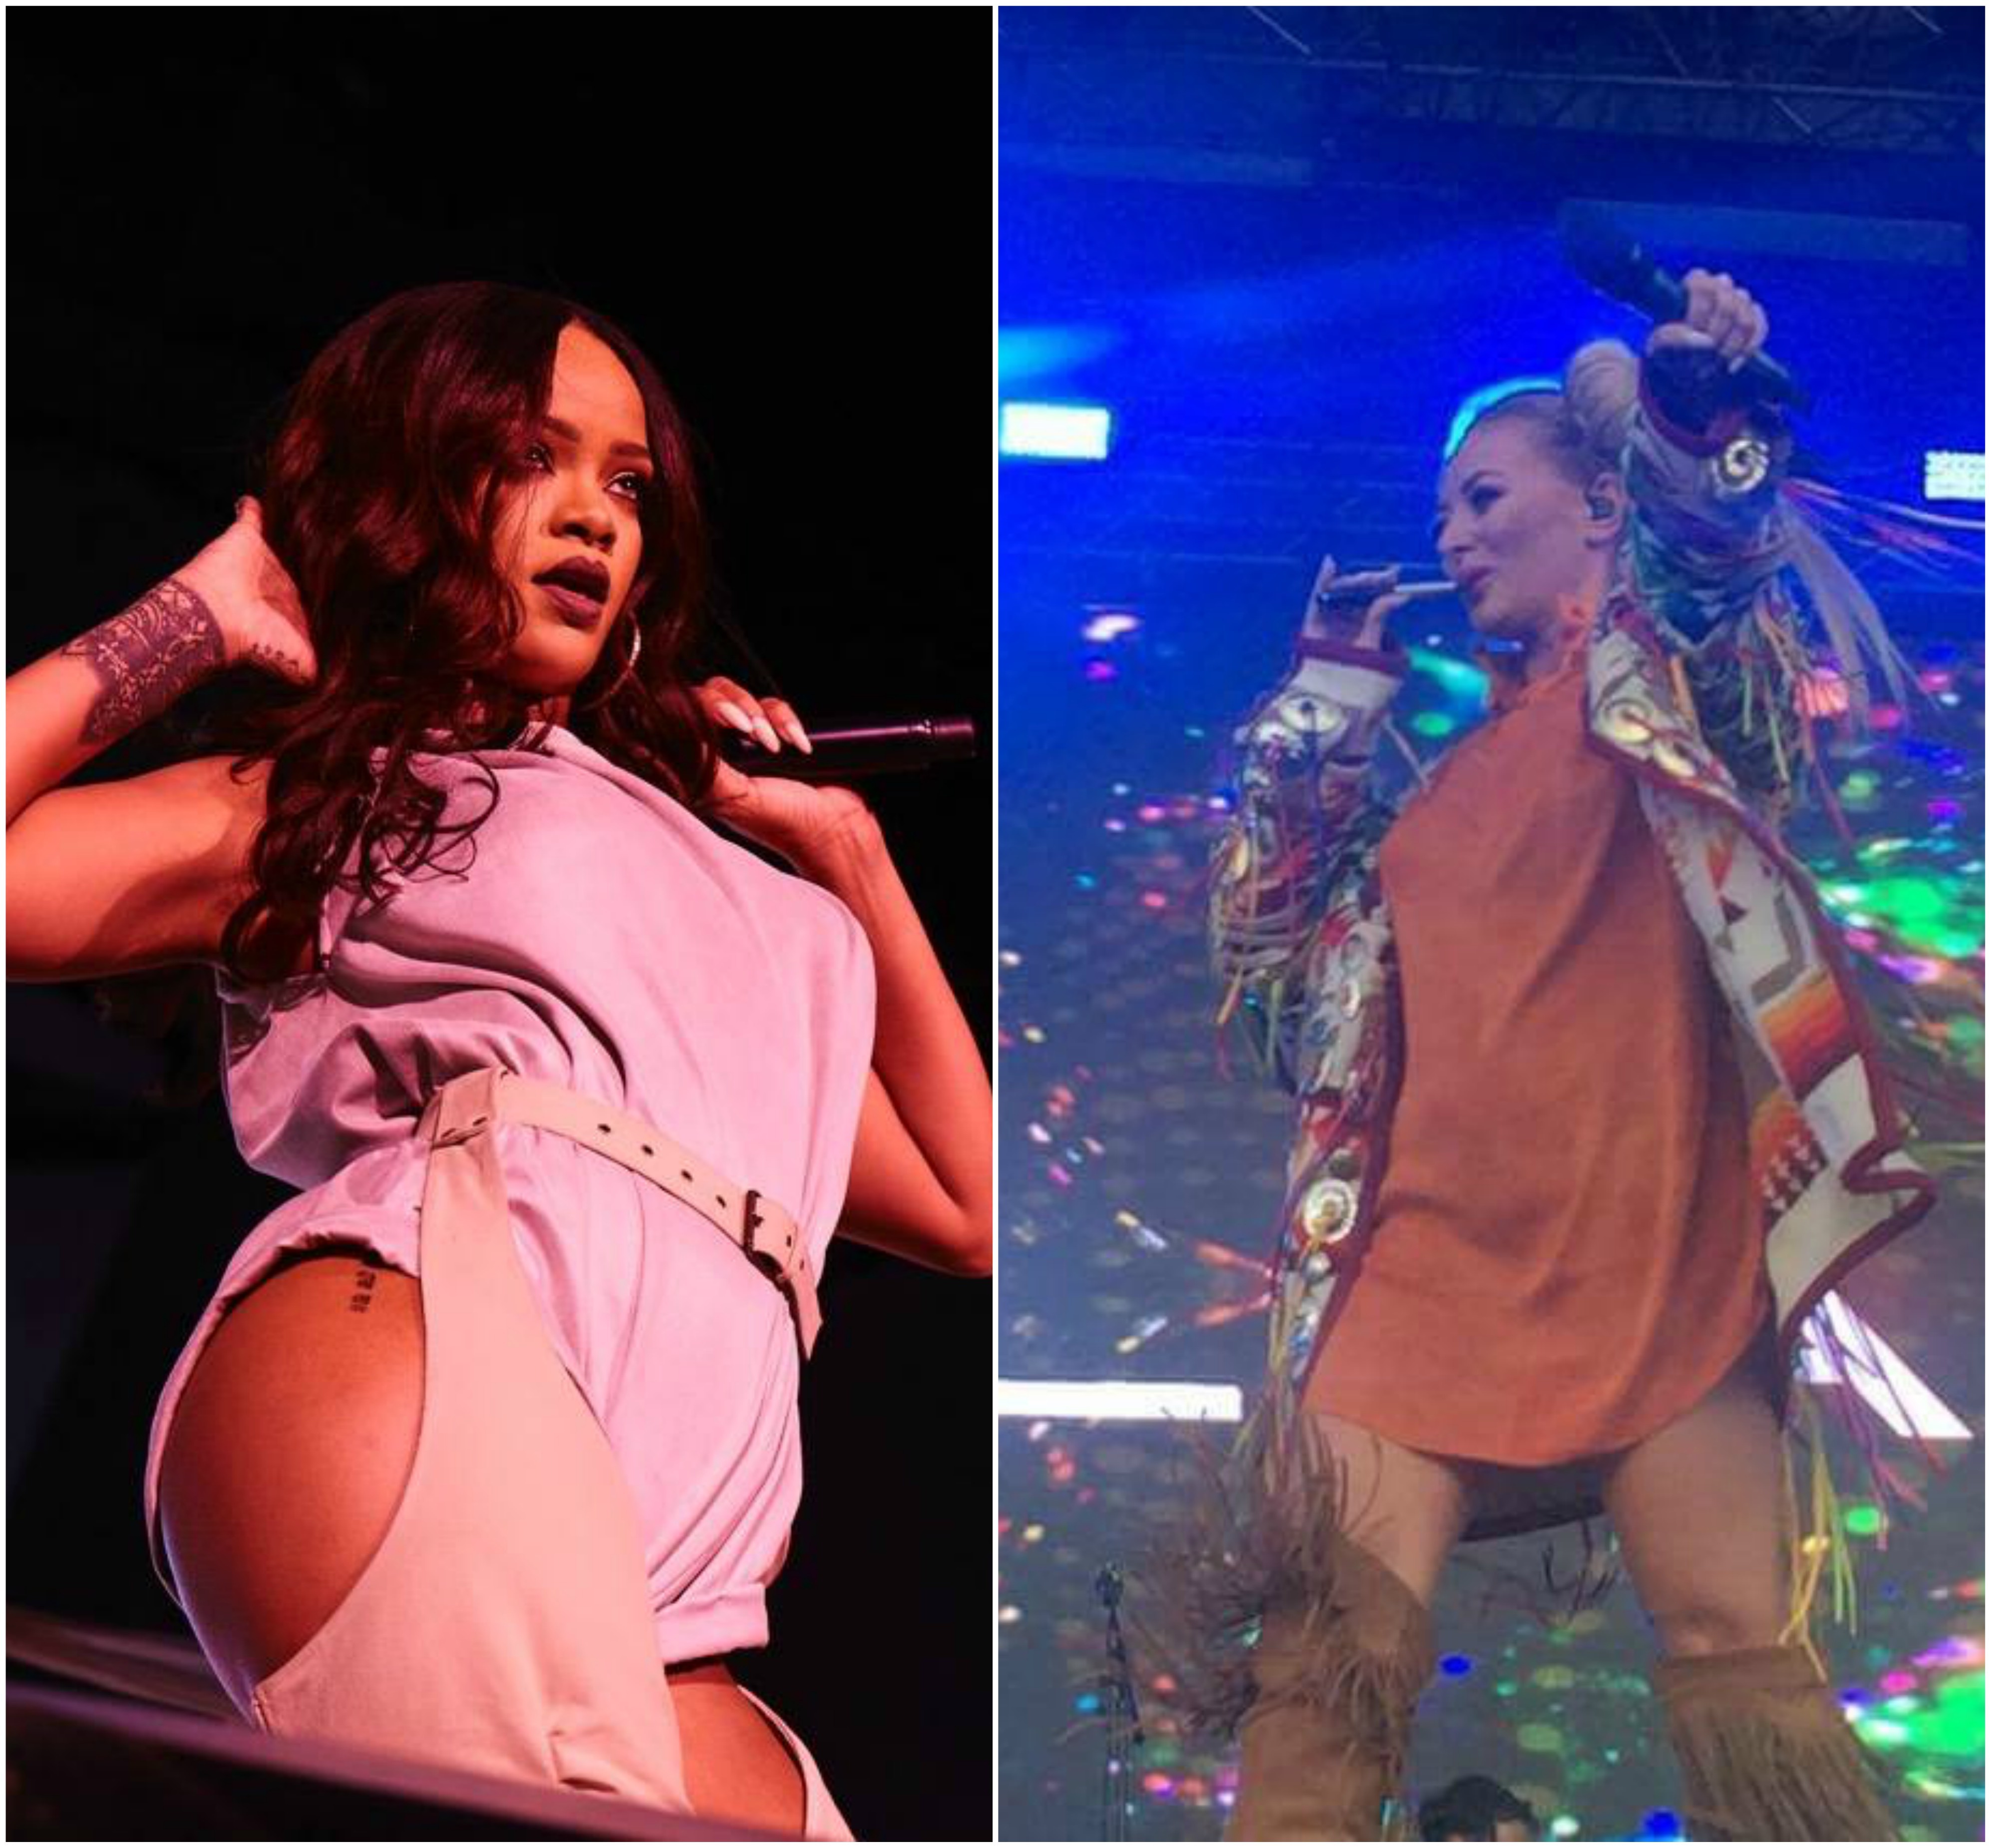 Deşi Delia a cântat în deschidere pentru ea, Rihanna nu a făcut nici o excepţie de la regula proprie, refuzând să facă fotografii imediat după concert.